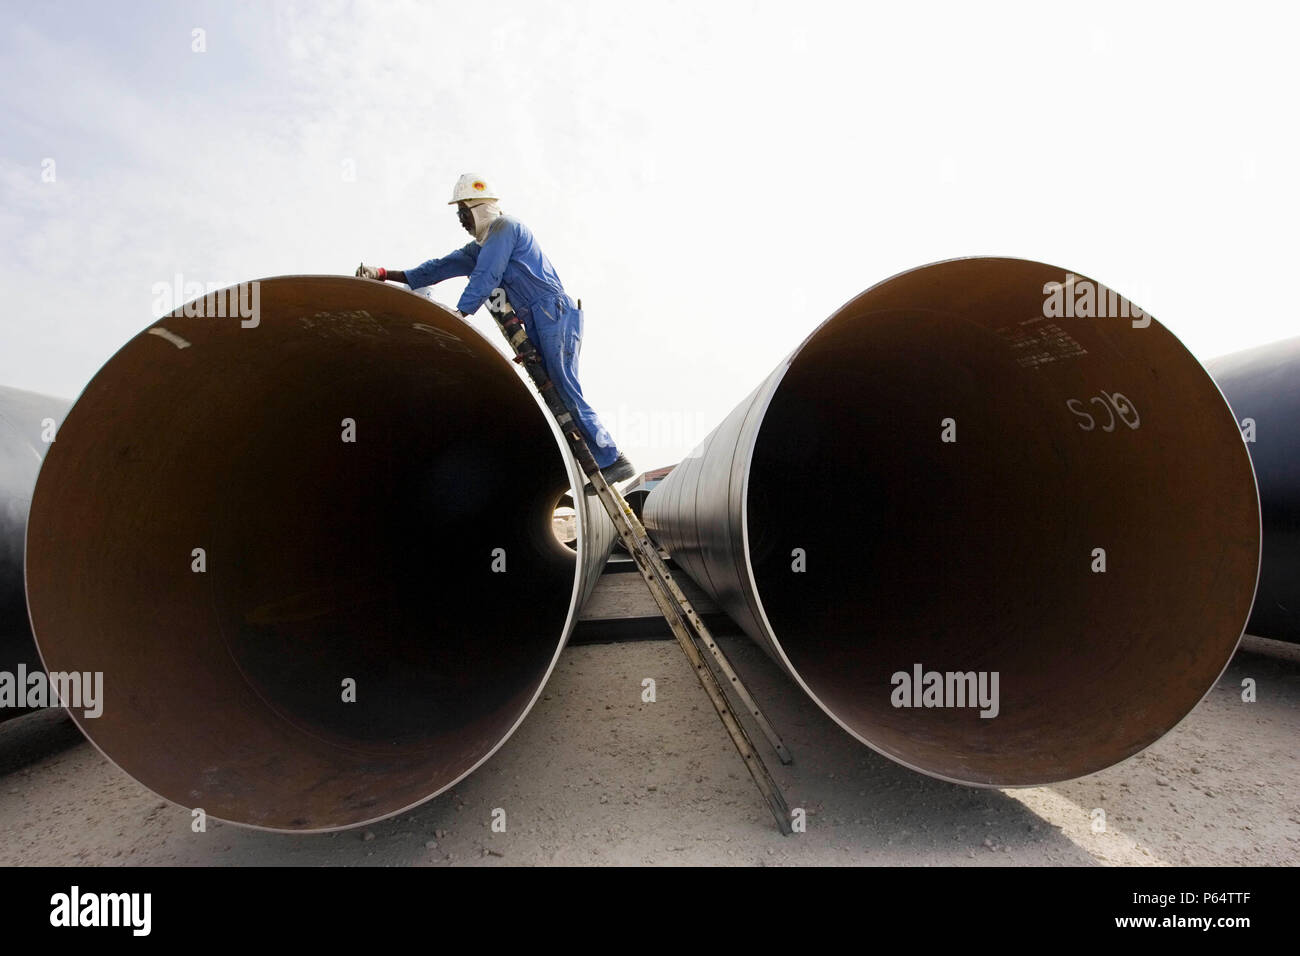 Pipeline gesäumt, die oben in der Wüste, Doha. Stockfoto